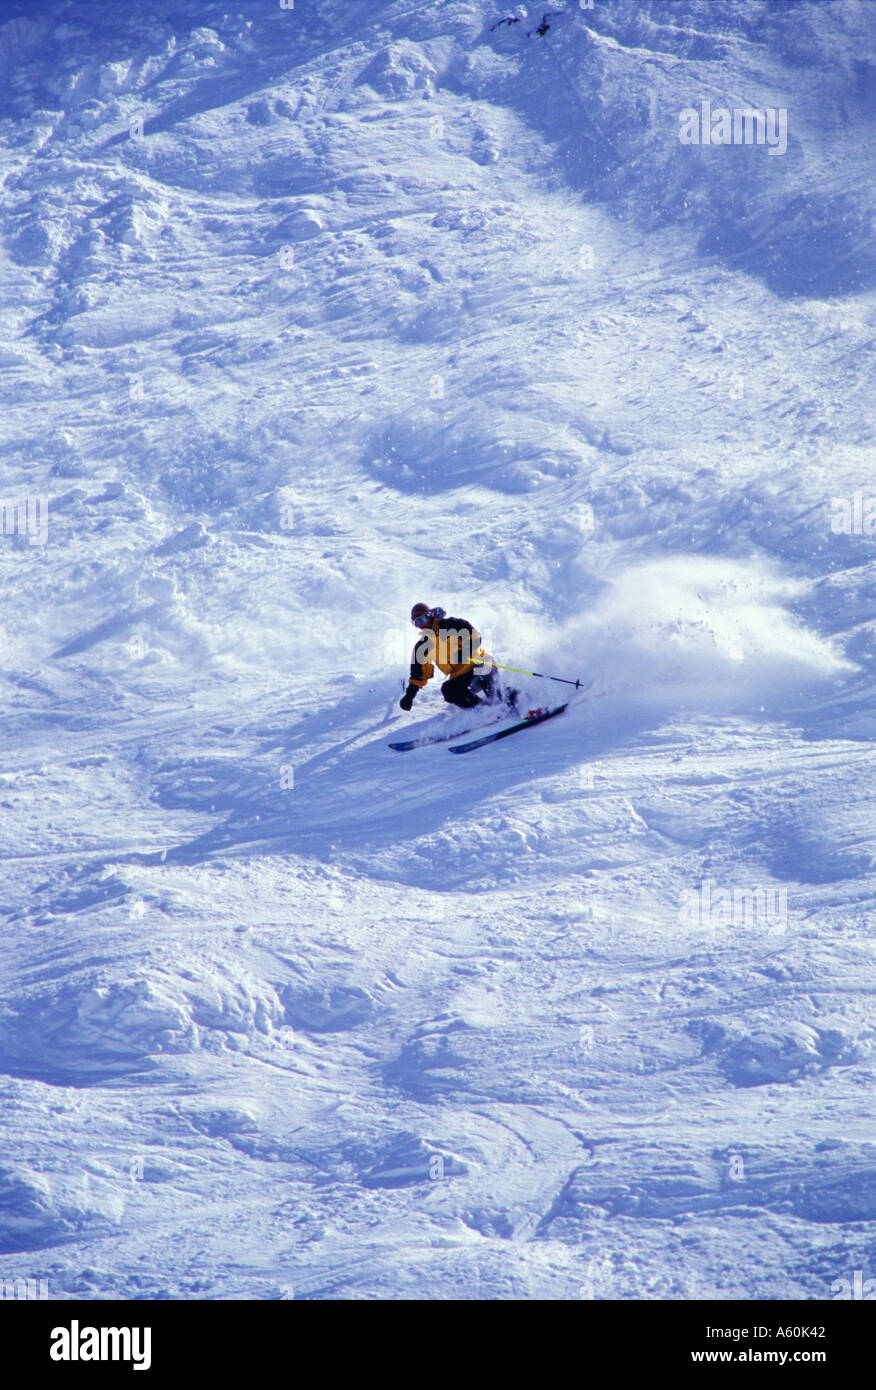 Un esquiador hace un giro cerrado a alta velocidad en terreno extremadamente empinado en Crested Butte Colorado Foto de stock